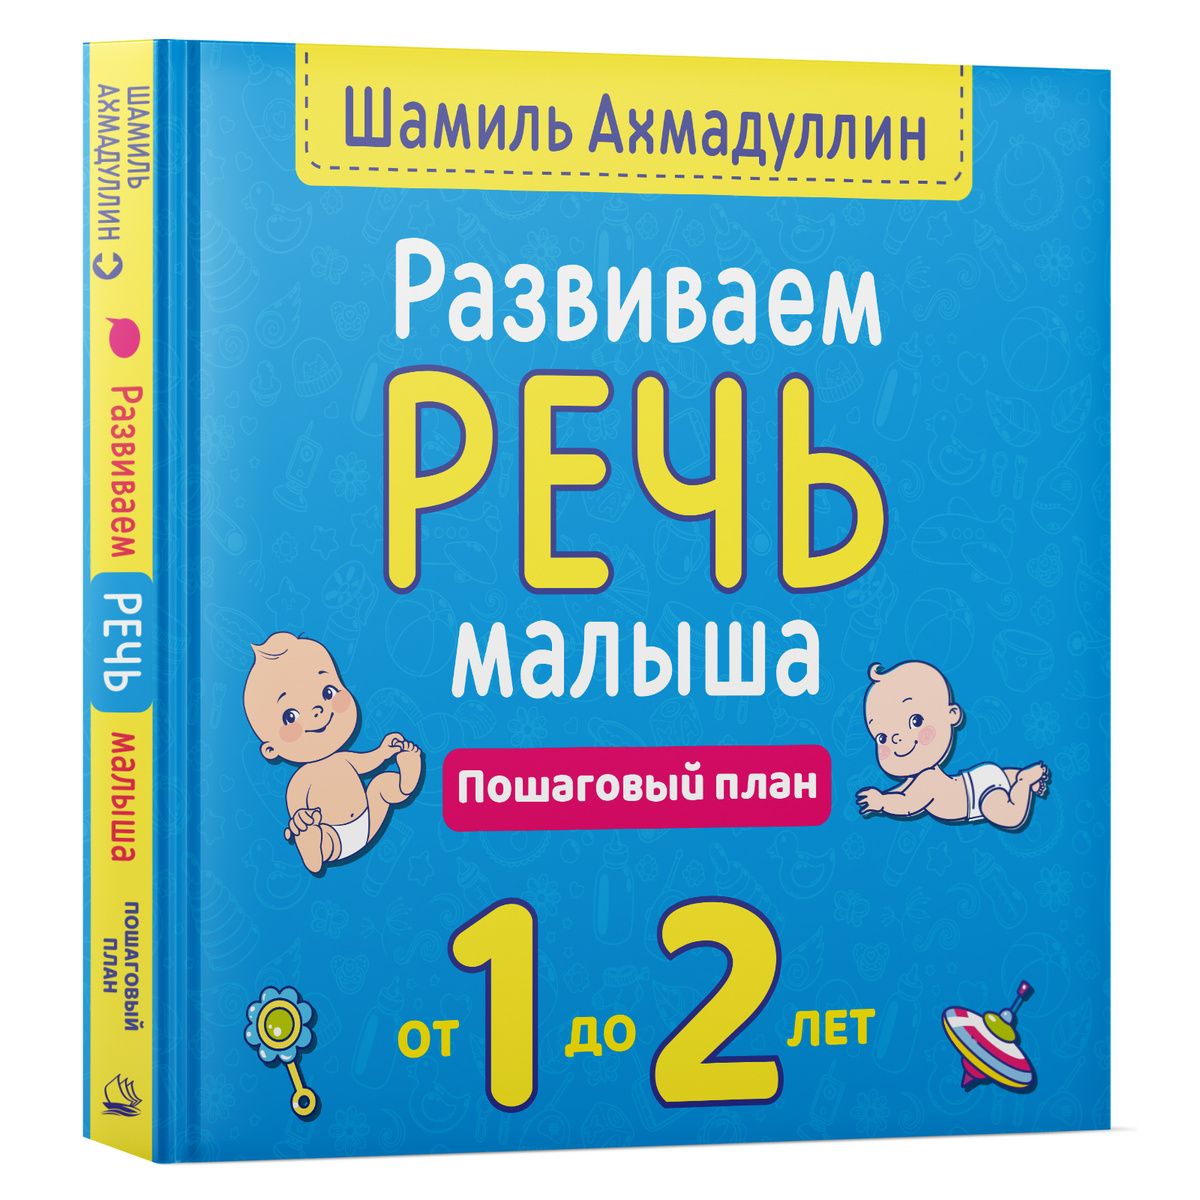 Развиваем речь малыша от 1 до 2 лет. Пошаговый план. | Ахмадуллин Шамиль Тагирович  #1